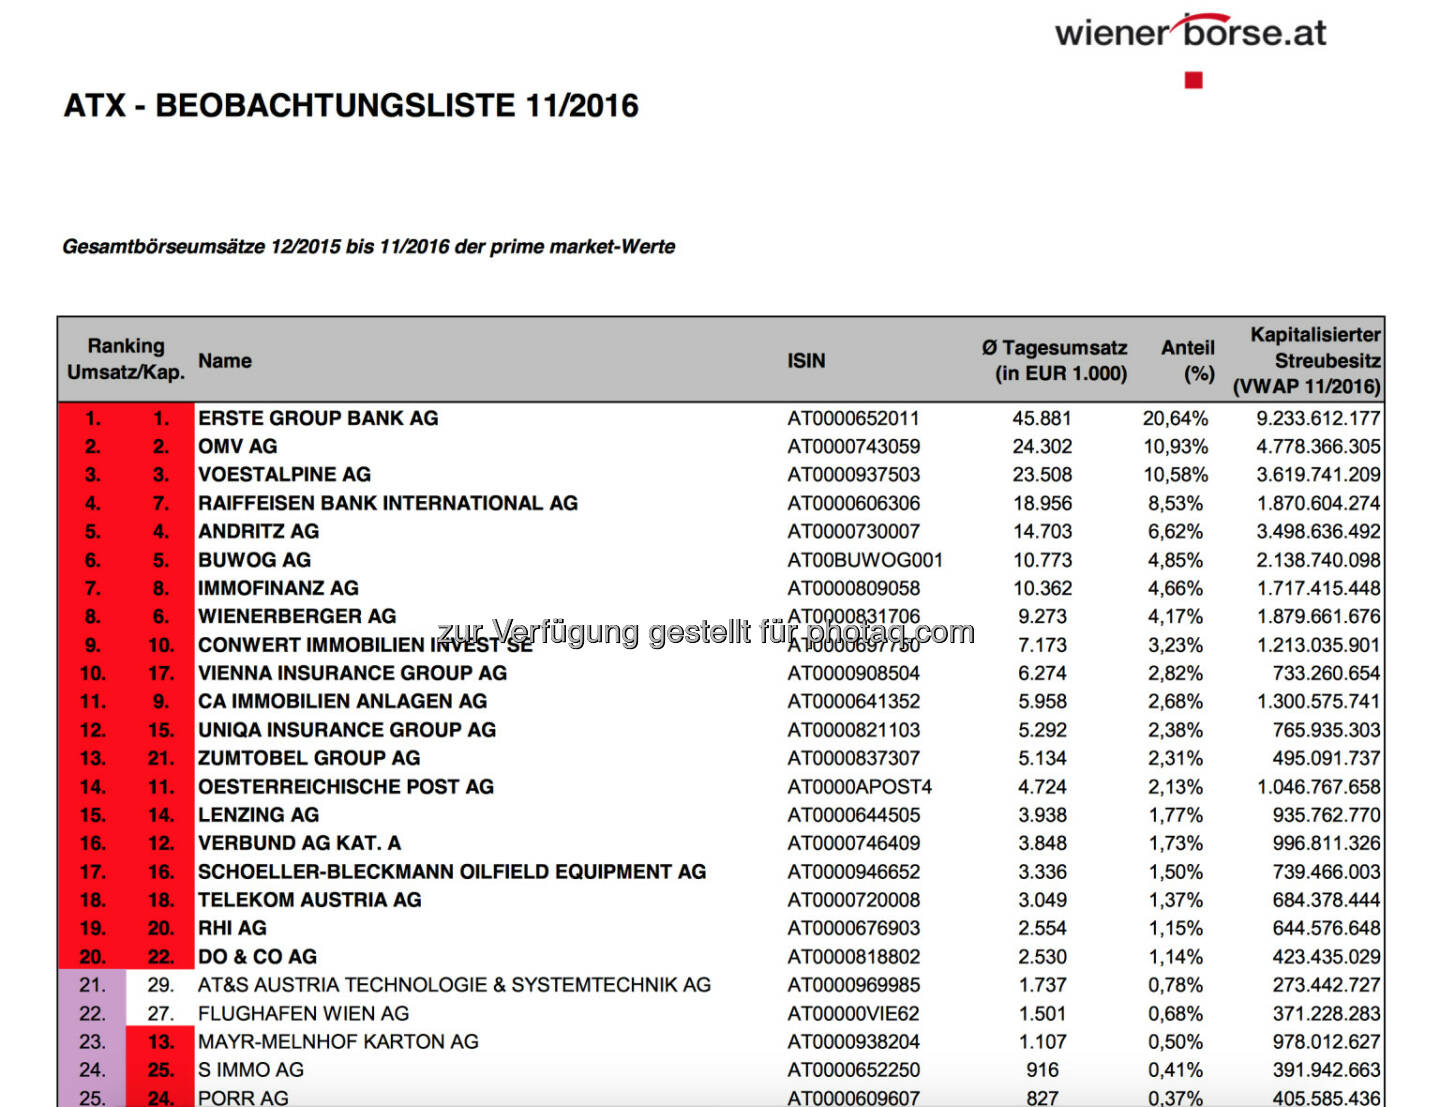 Wiener Börse: ATX-Beobachtungsliste 11/2016 